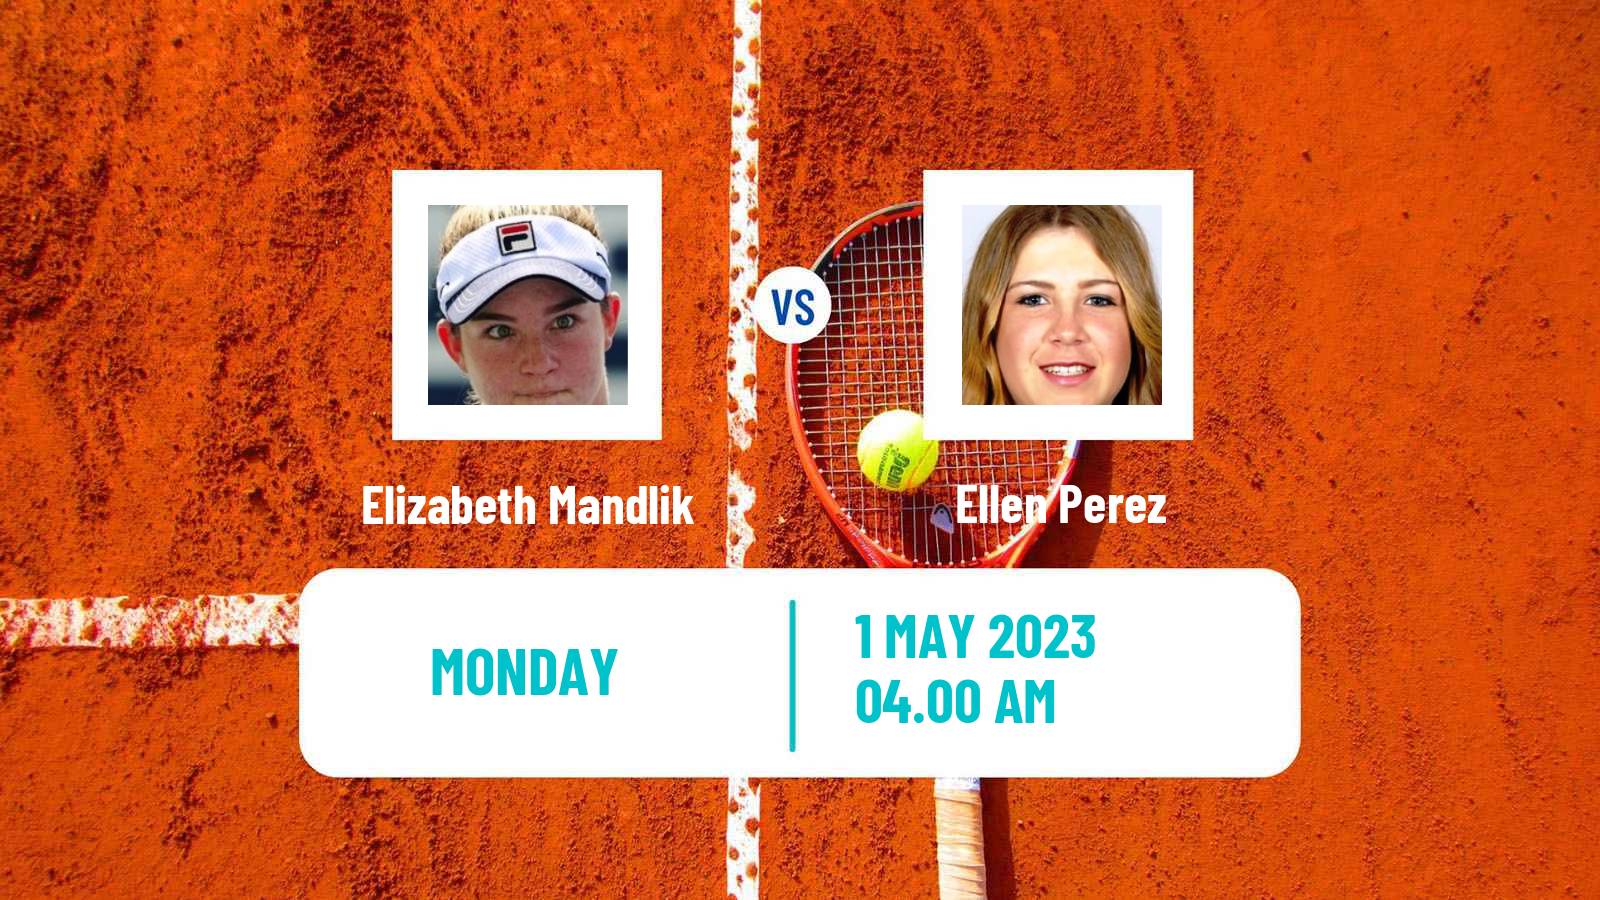 Tennis ATP Challenger Elizabeth Mandlik - Ellen Perez